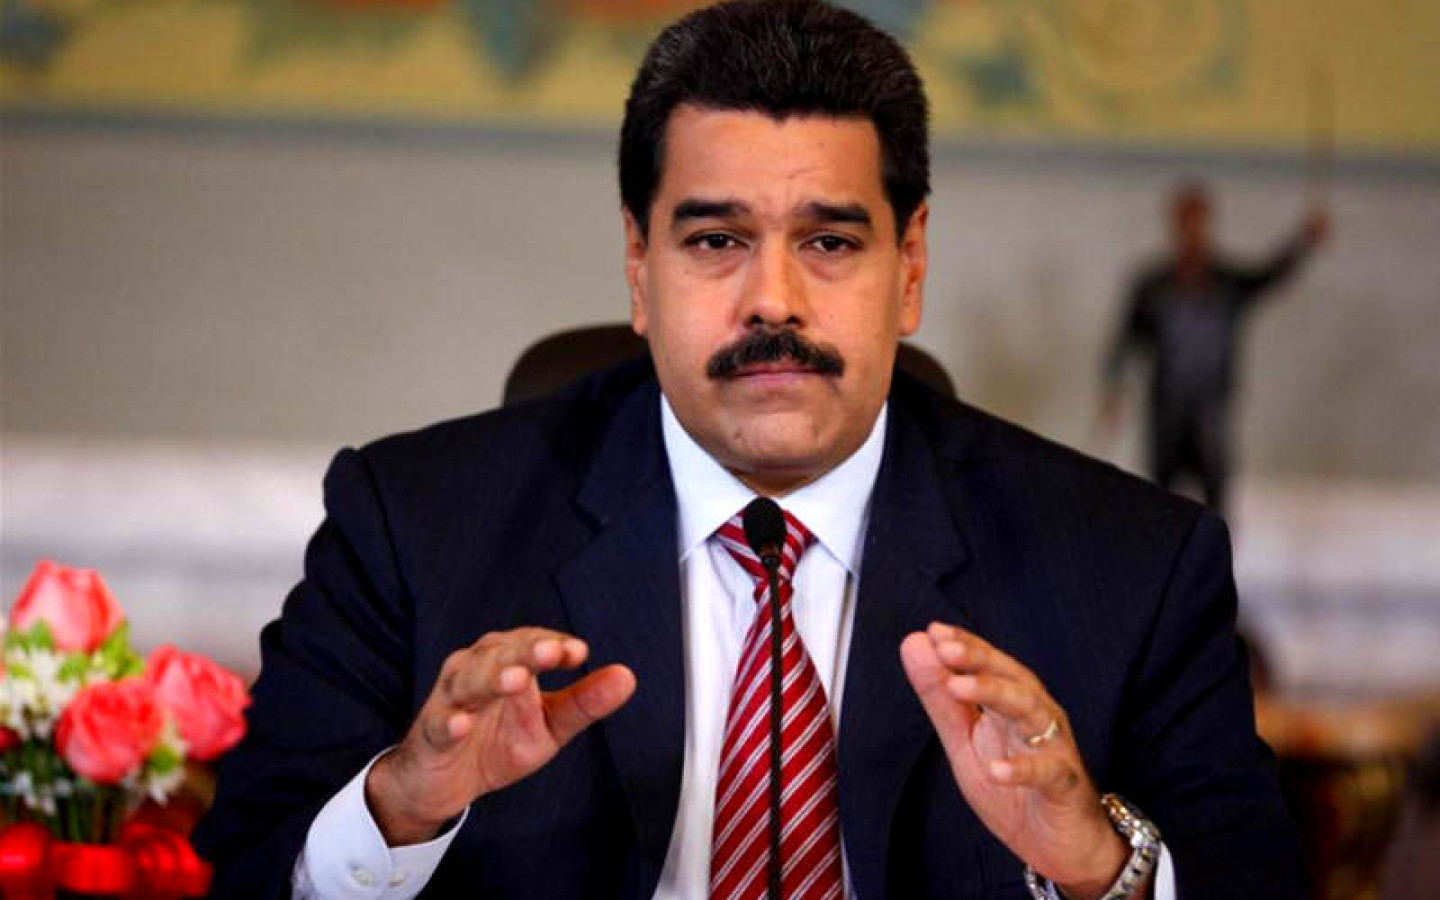 http://www.descifrado.com/wp-content/uploads/2020/02/Nicolas-Maduro-2-1440x900_c.jpg